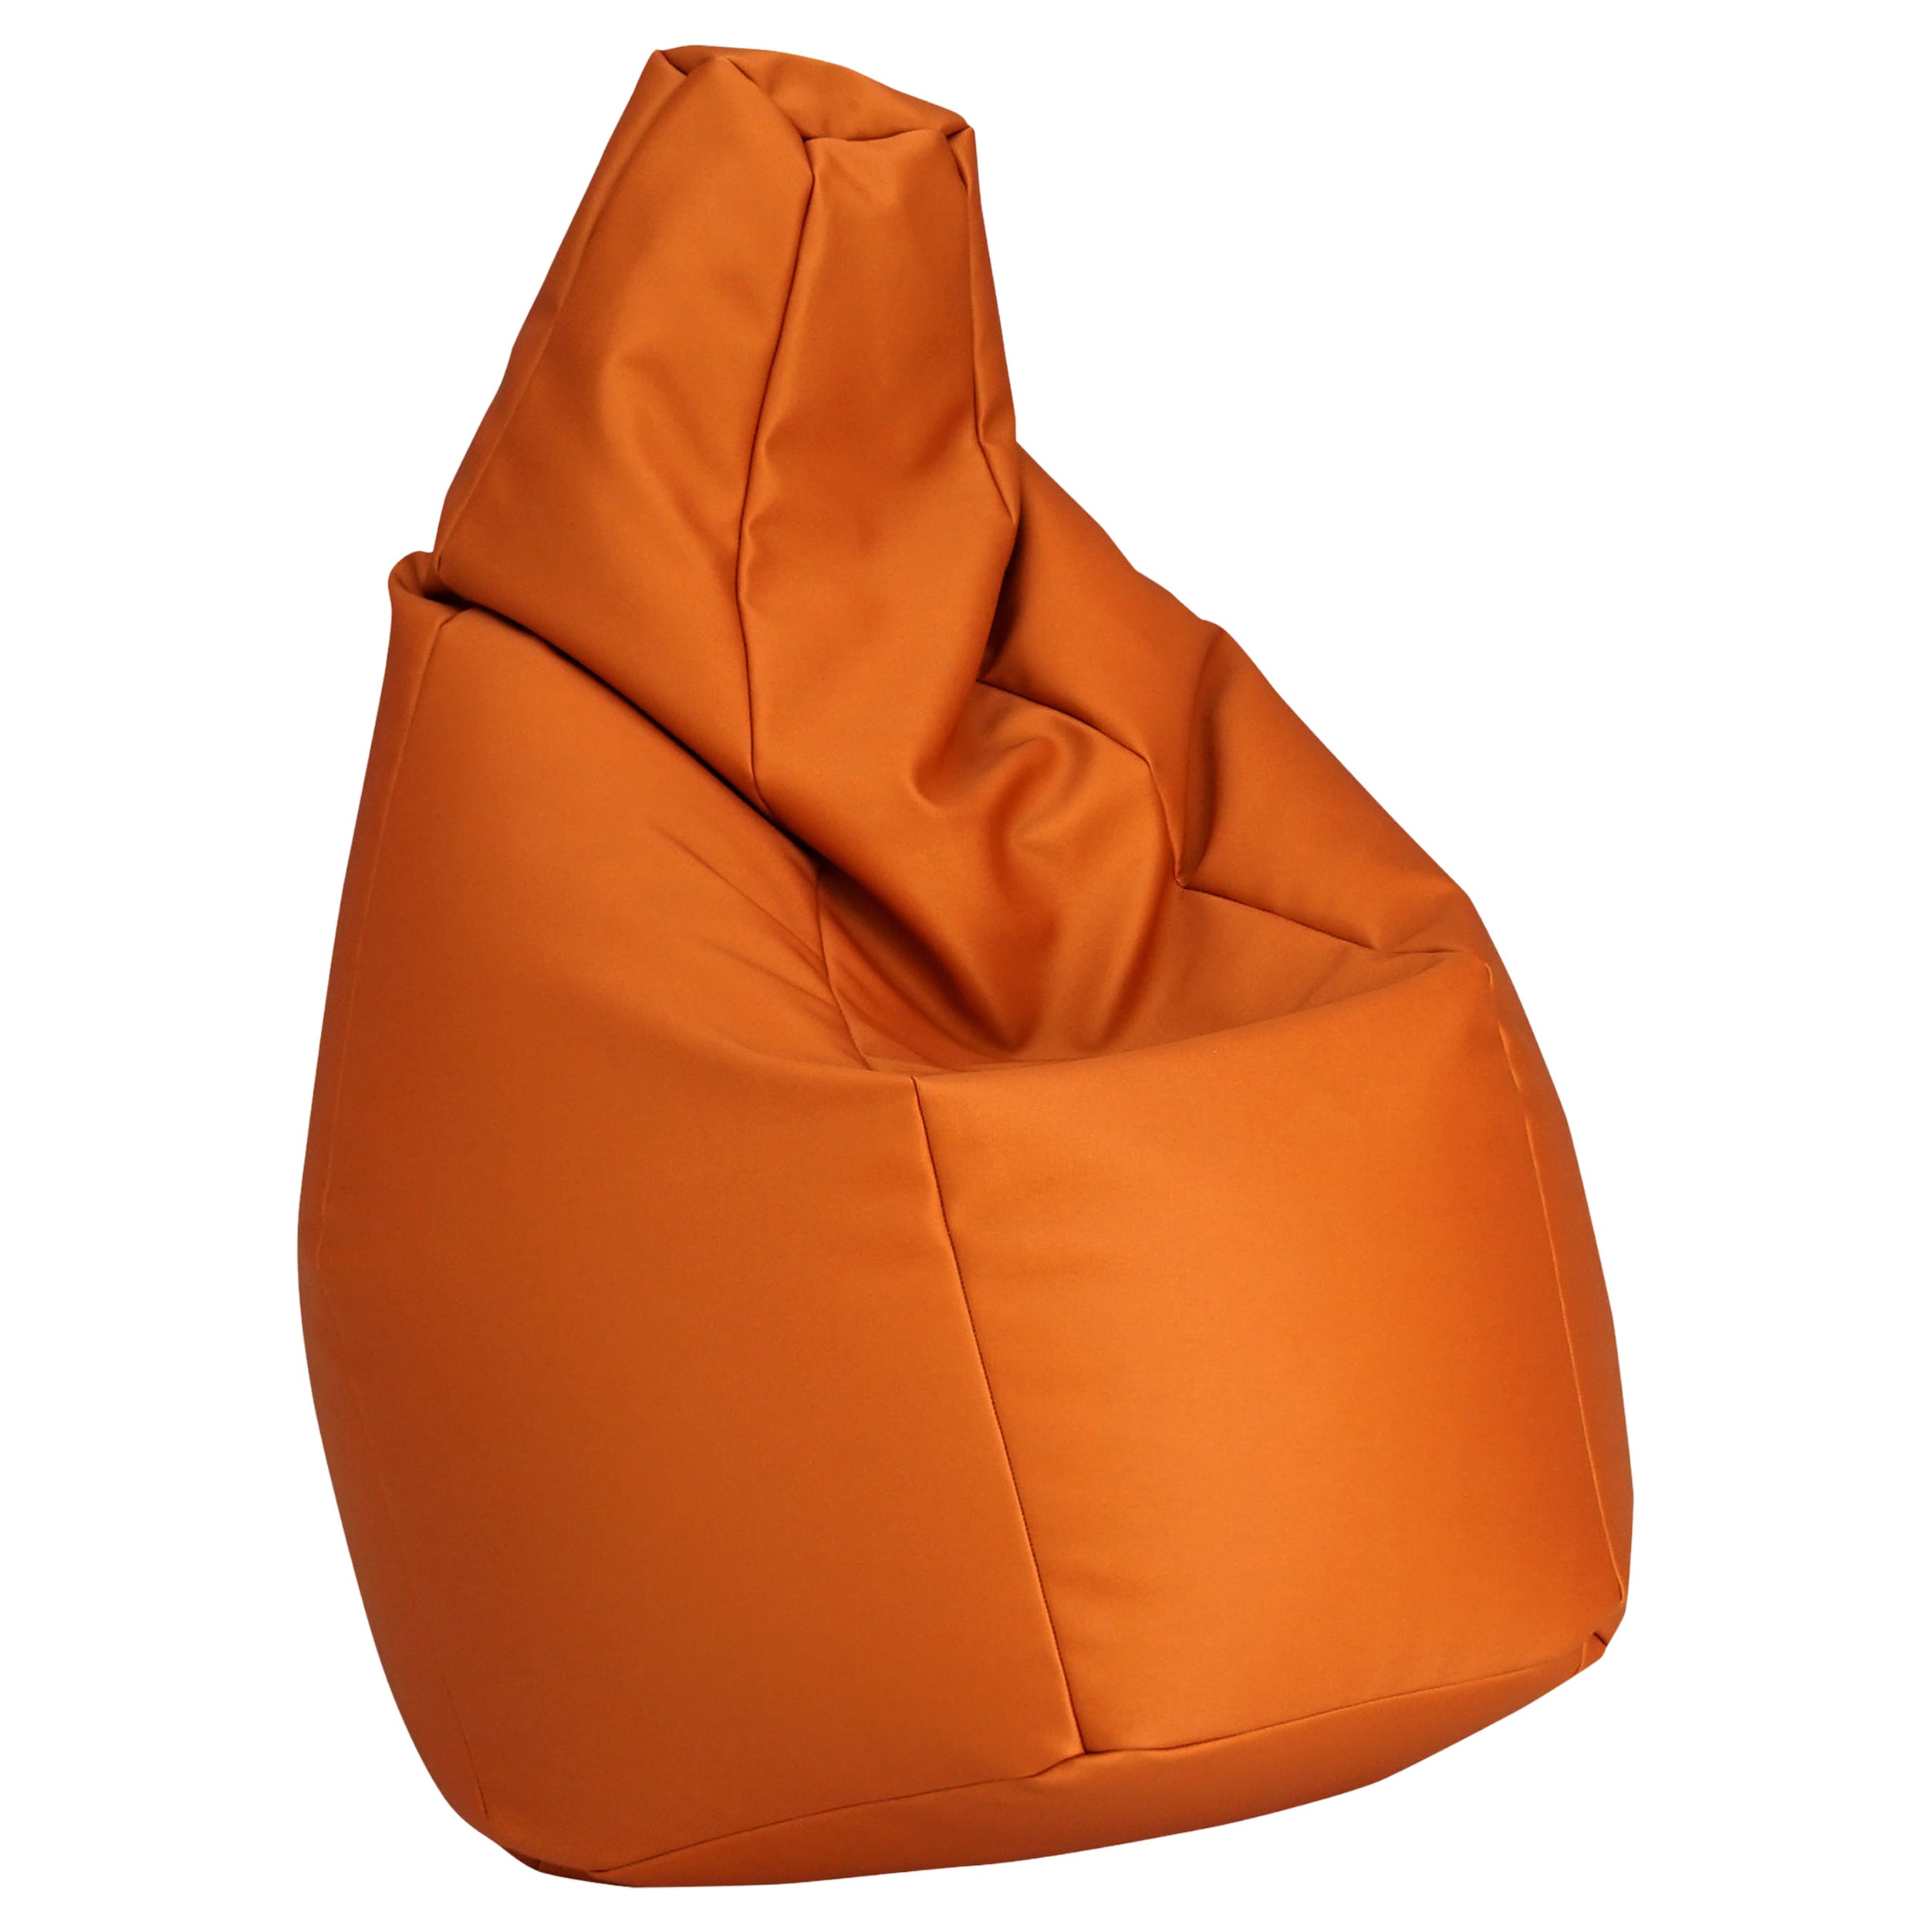 Zanotta Medium Sacco in Orange Vip Fabric by Gatti, Paolini, Teodoro